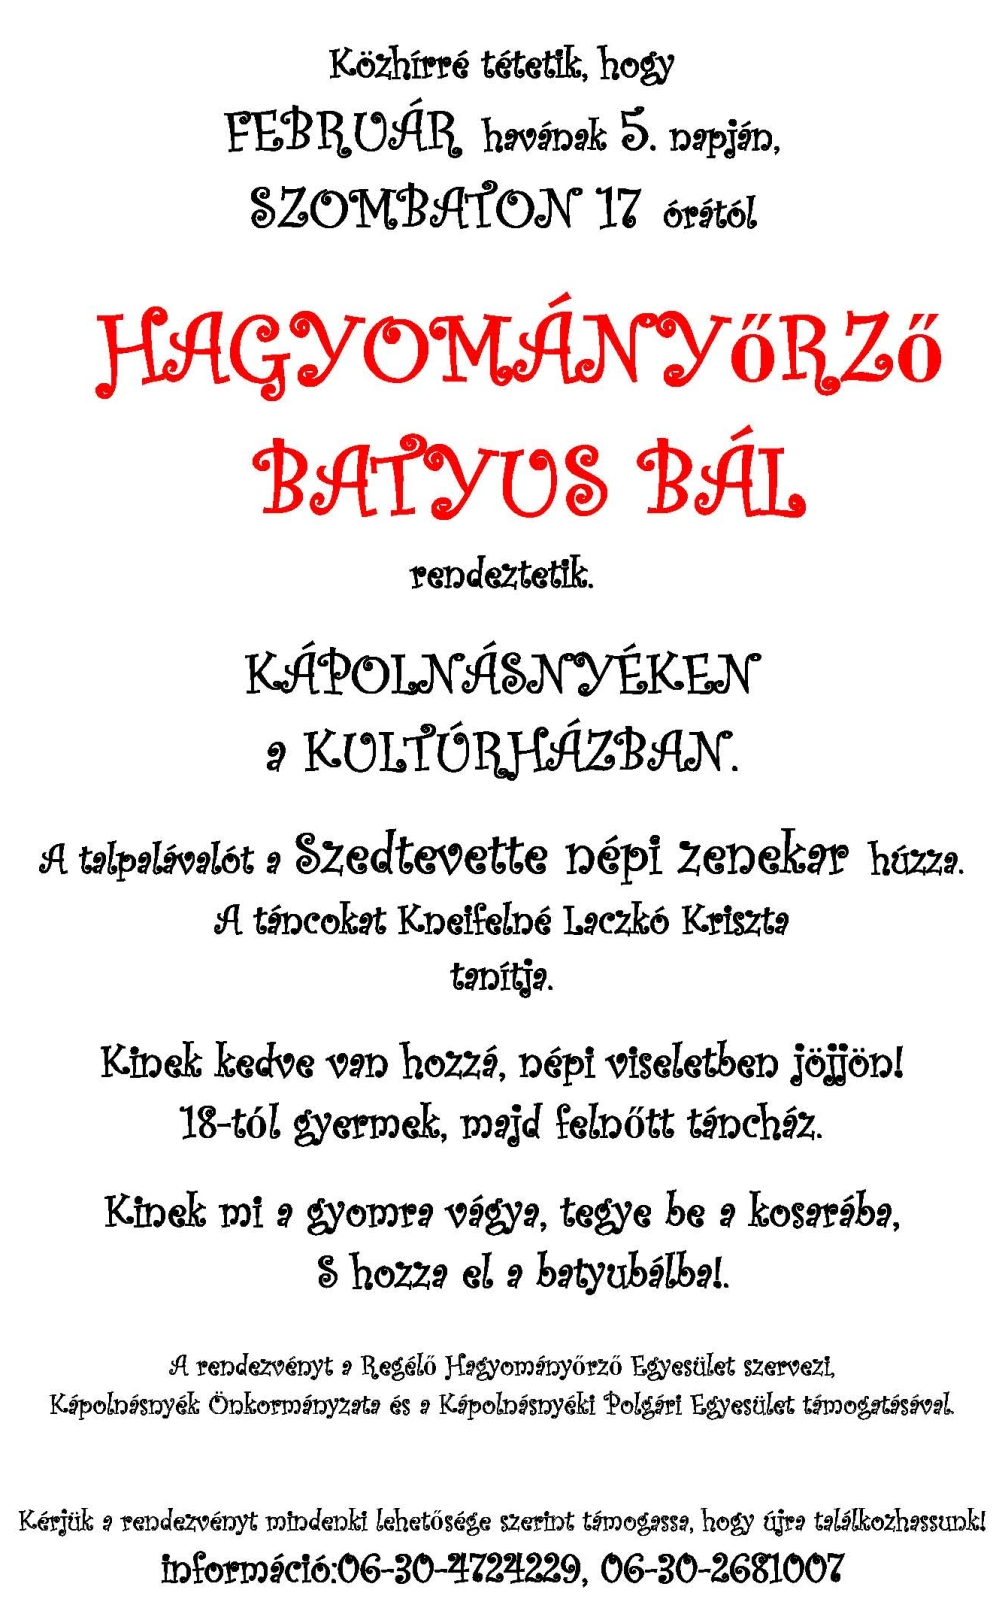 Batyus Bál Kápolnásnyéken - 2011. február 5.